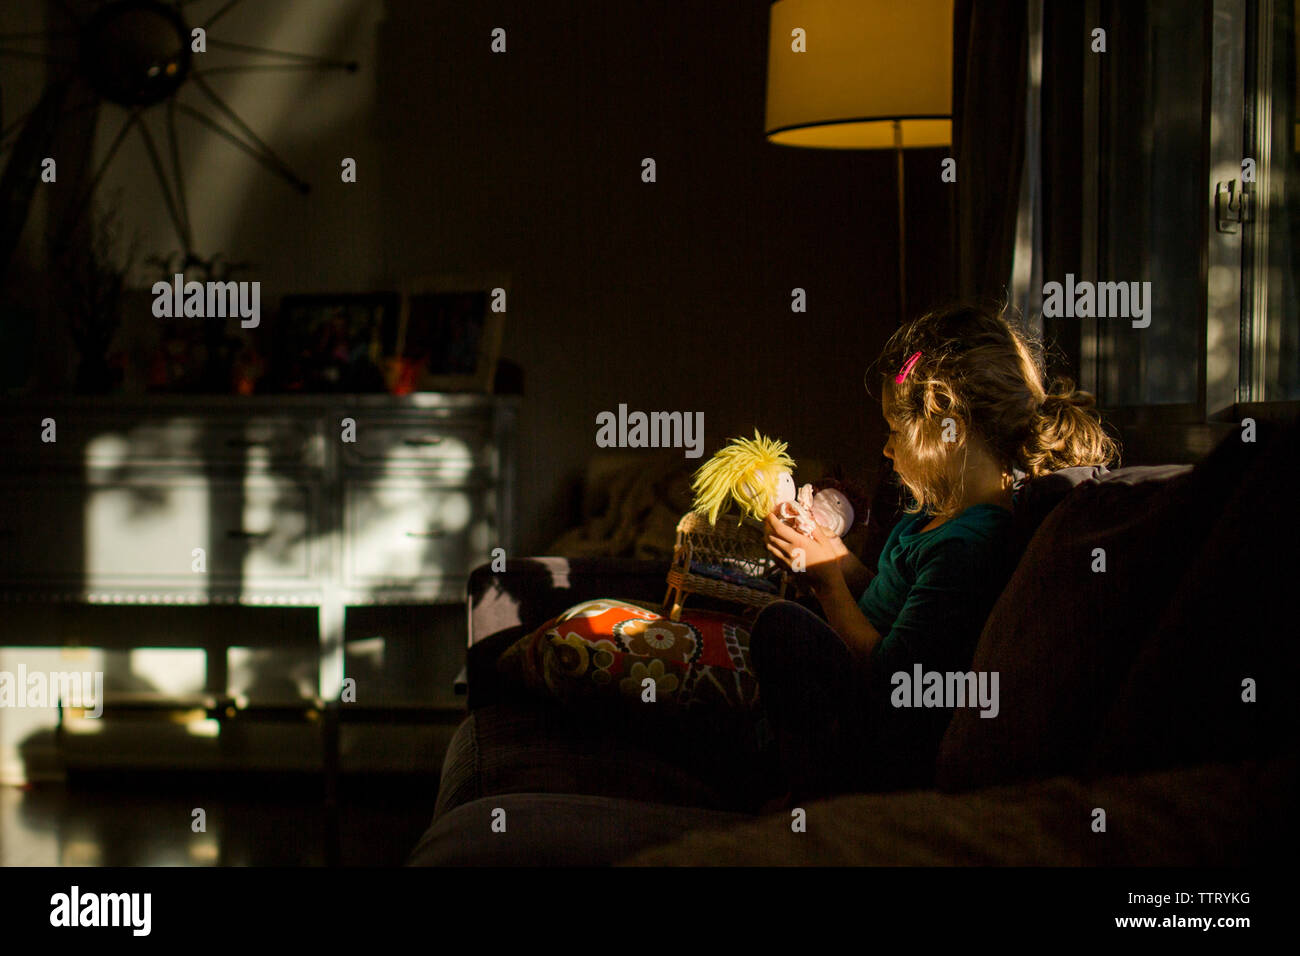 Una niña pequeña está sentada en un parche de luz en una habitación oscura sosteniendo una muñeca Foto de stock